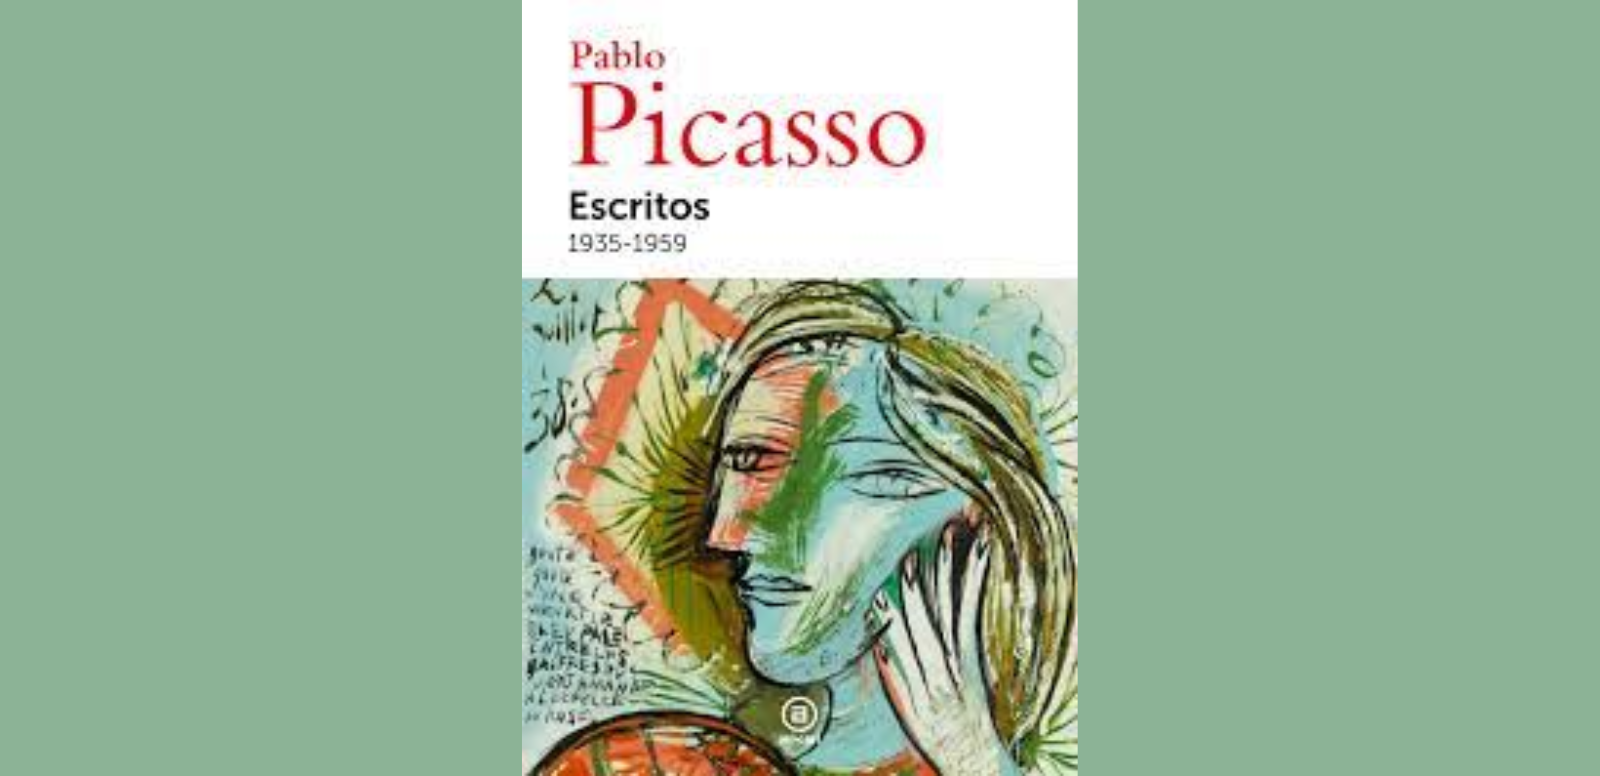 Pablo Picasso. Escritos. 1935-1959